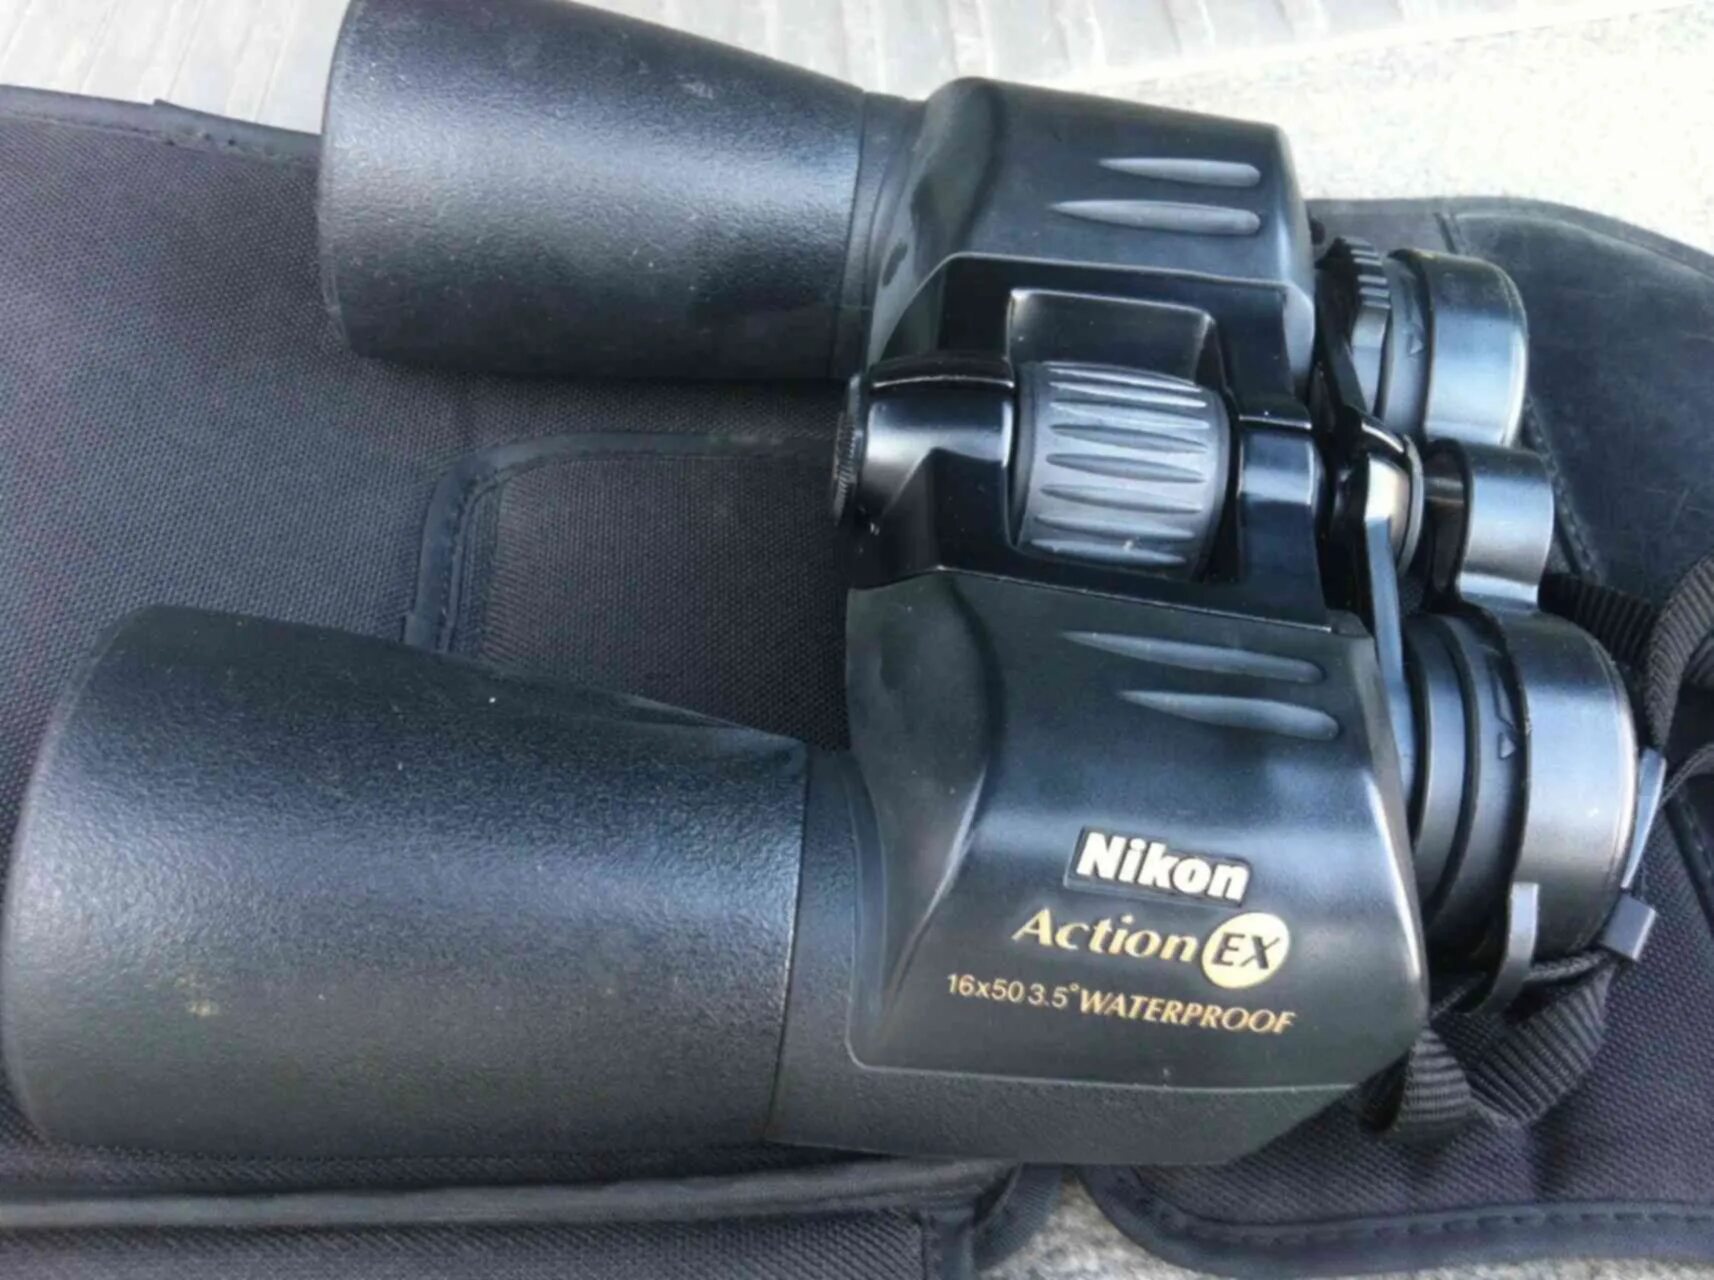 Active 16. Бинокль Nikon Action ex wp 16x50 CF. Прибор ночного видения - бинокль Nikon Action ex 16х50мм.